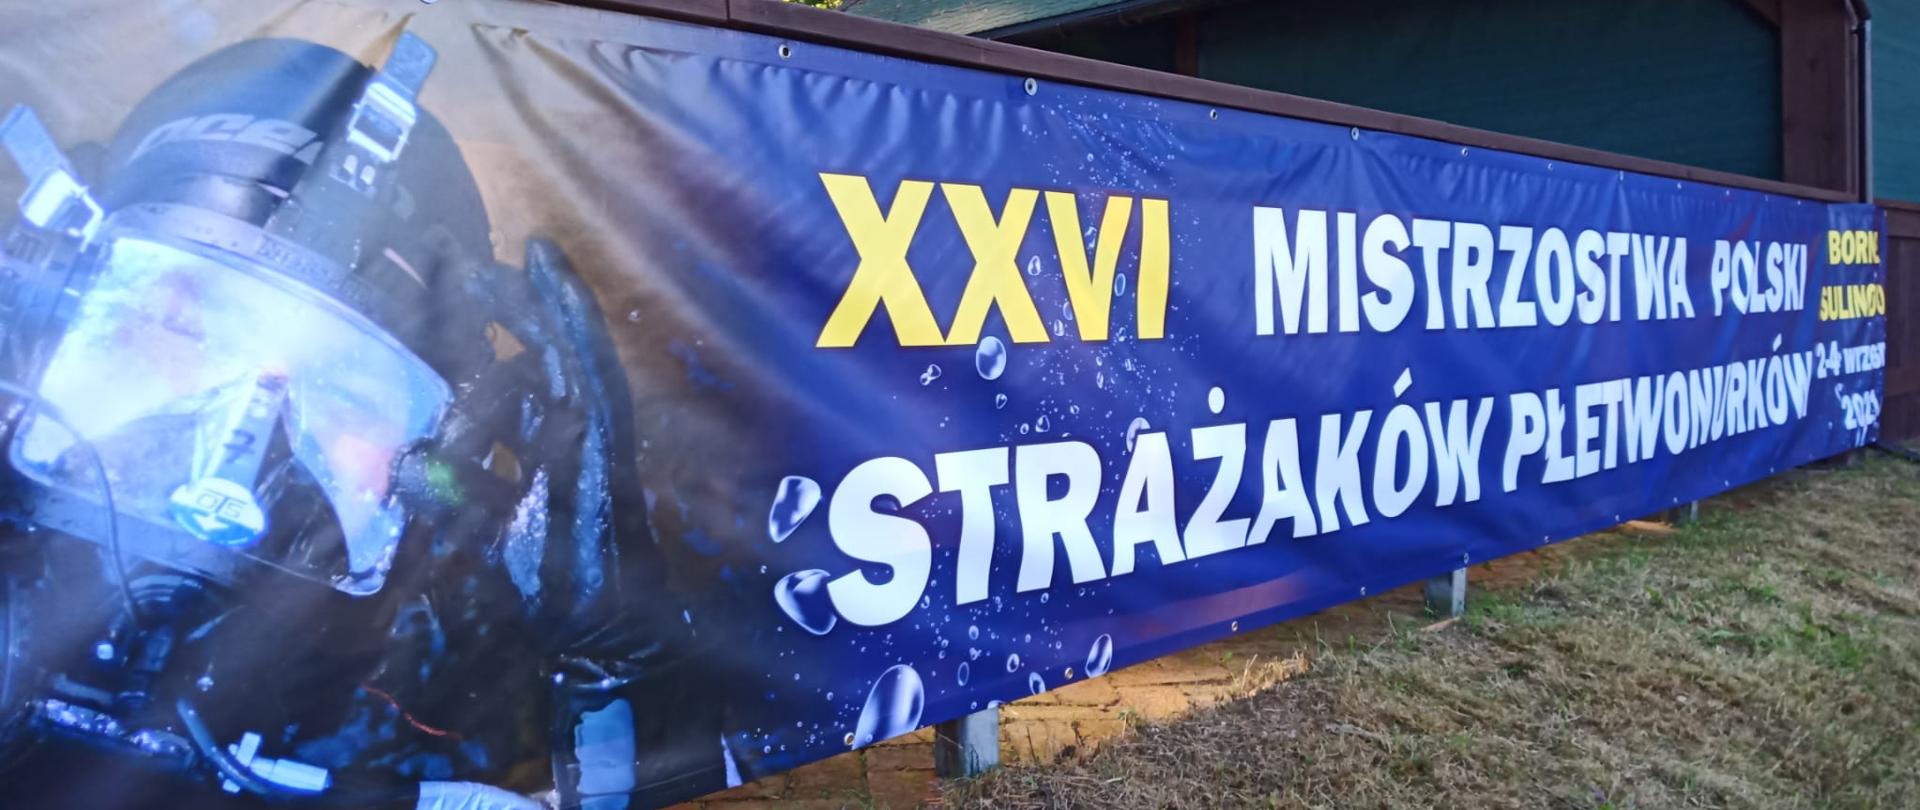 XXVI Mistrzostwa Polski Strażaków Płetwonurków